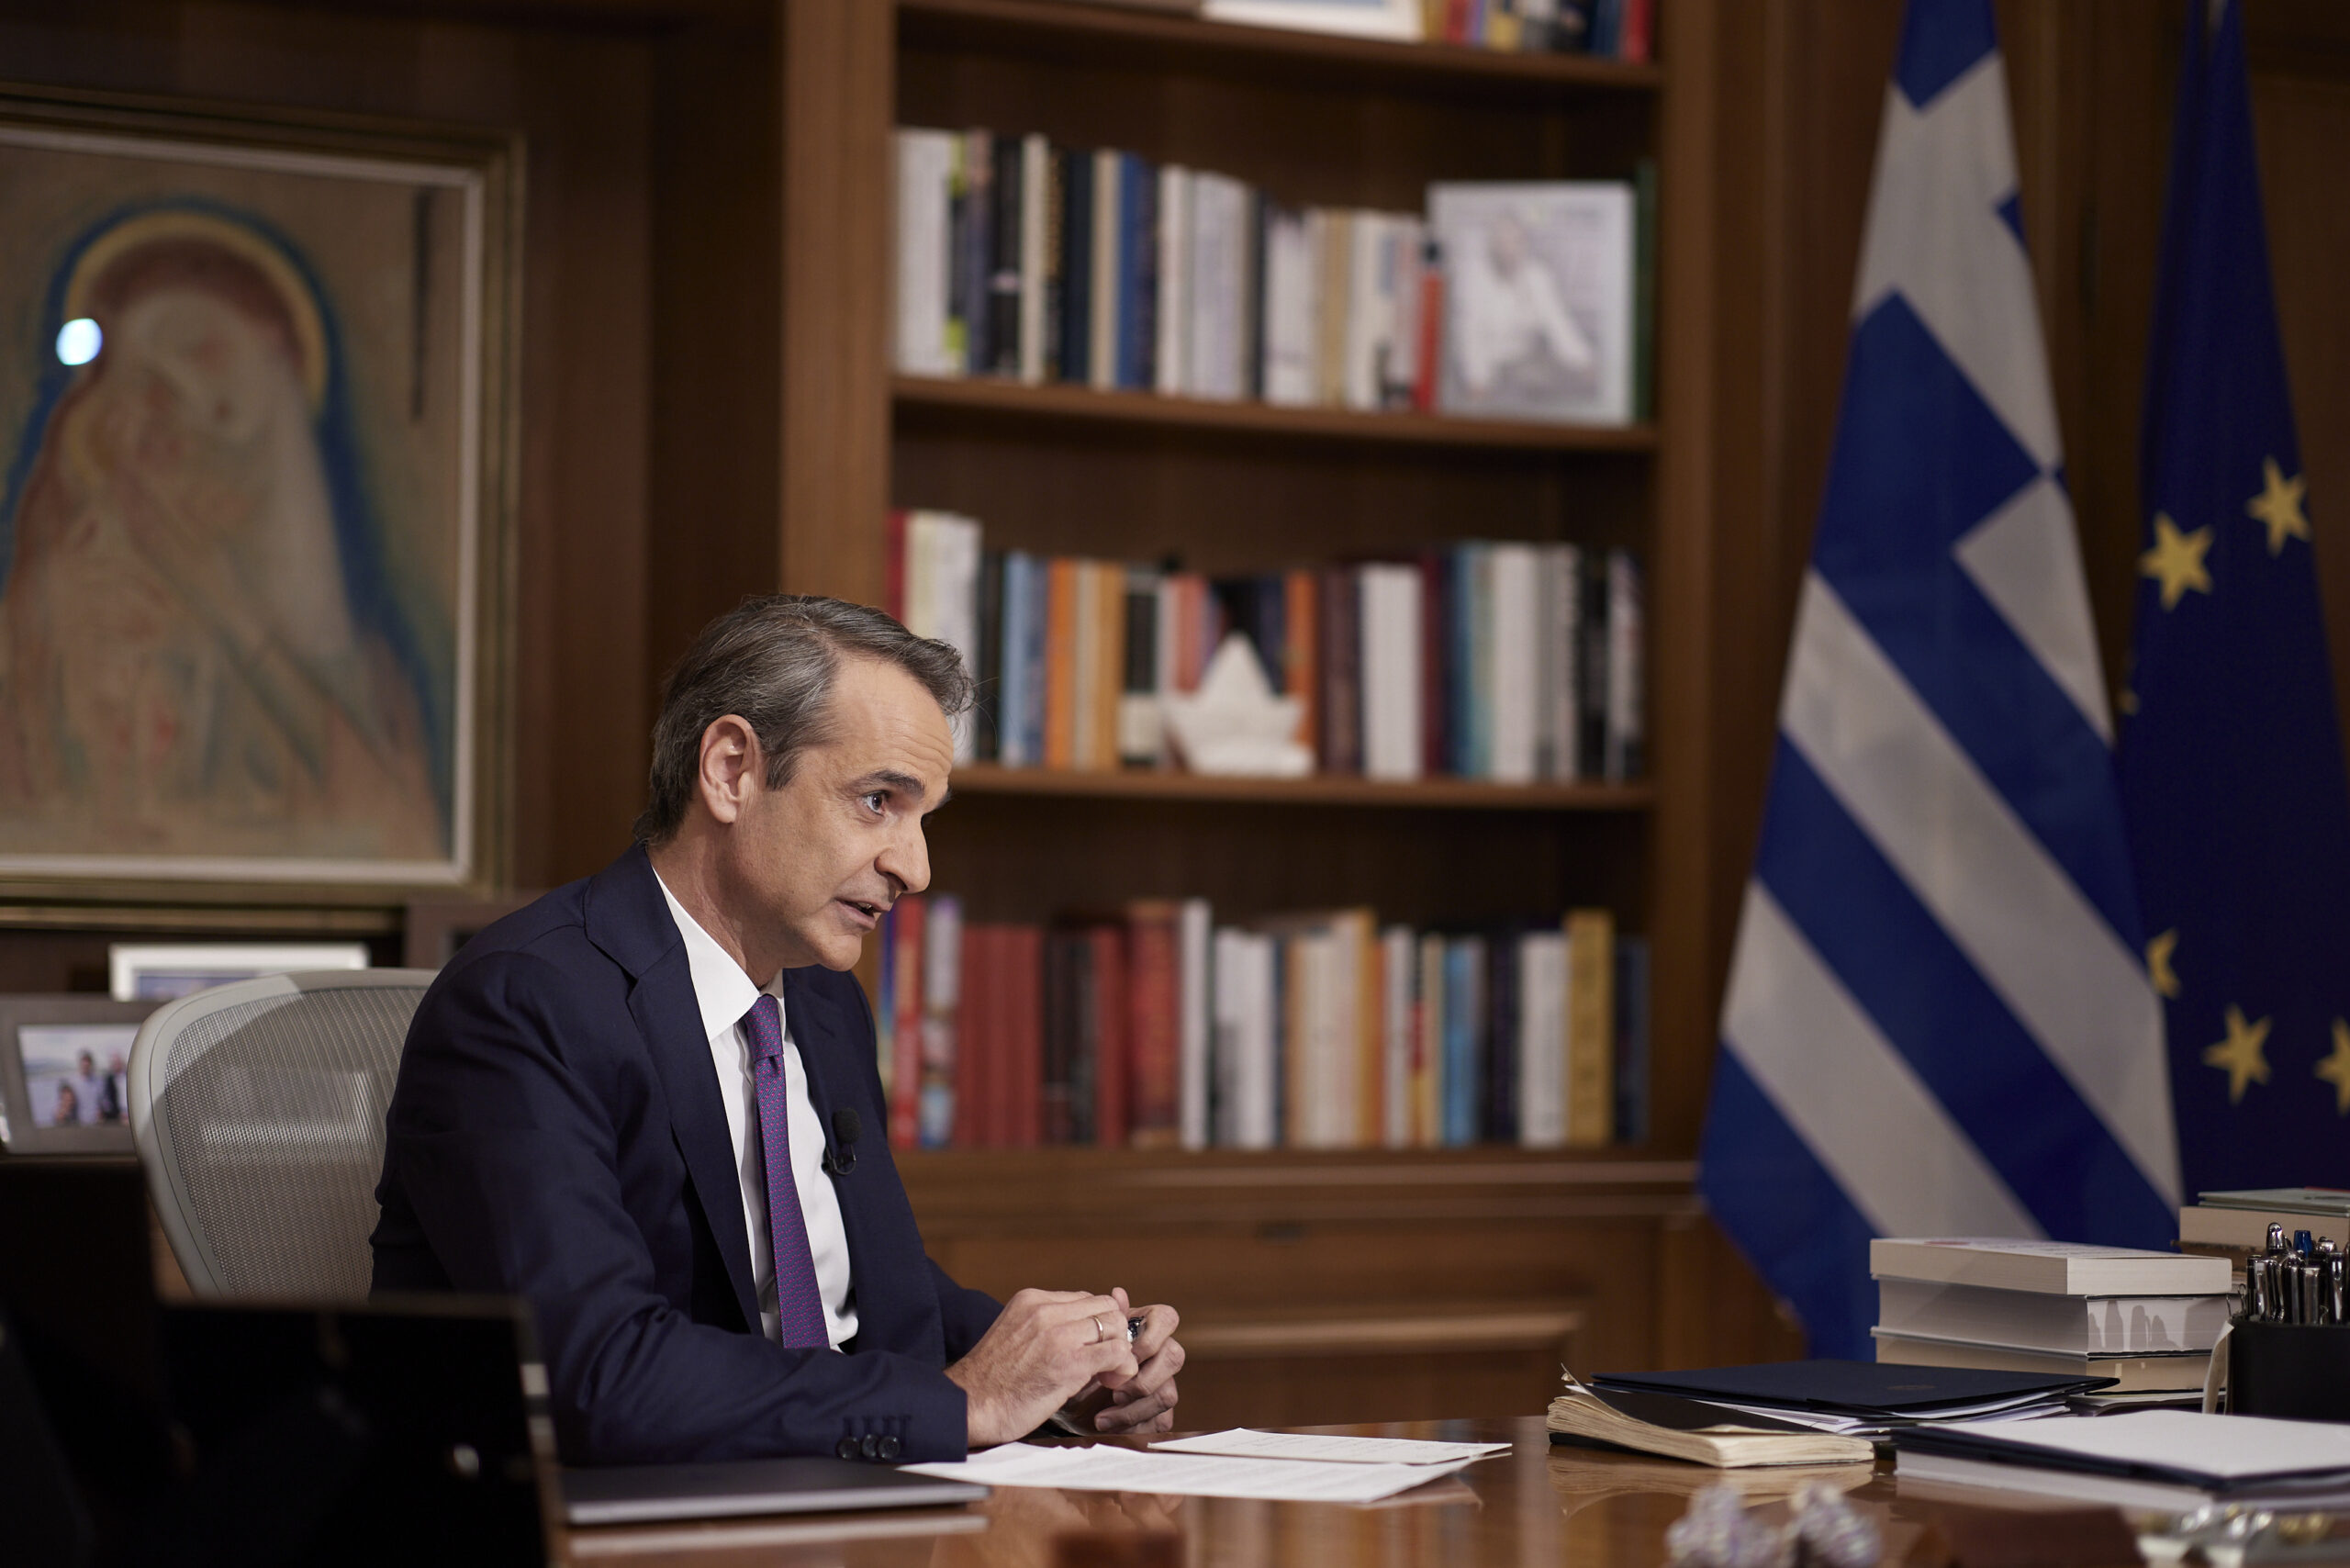 Κυρ. Μητσοτάκης στην ΕΡΤ: Δουλειά μου είναι να εκπροσωπώ την Ελλάδα στην Ευρώπη – Απέκλεισε αποχώρηση από την πρωθυπουργία